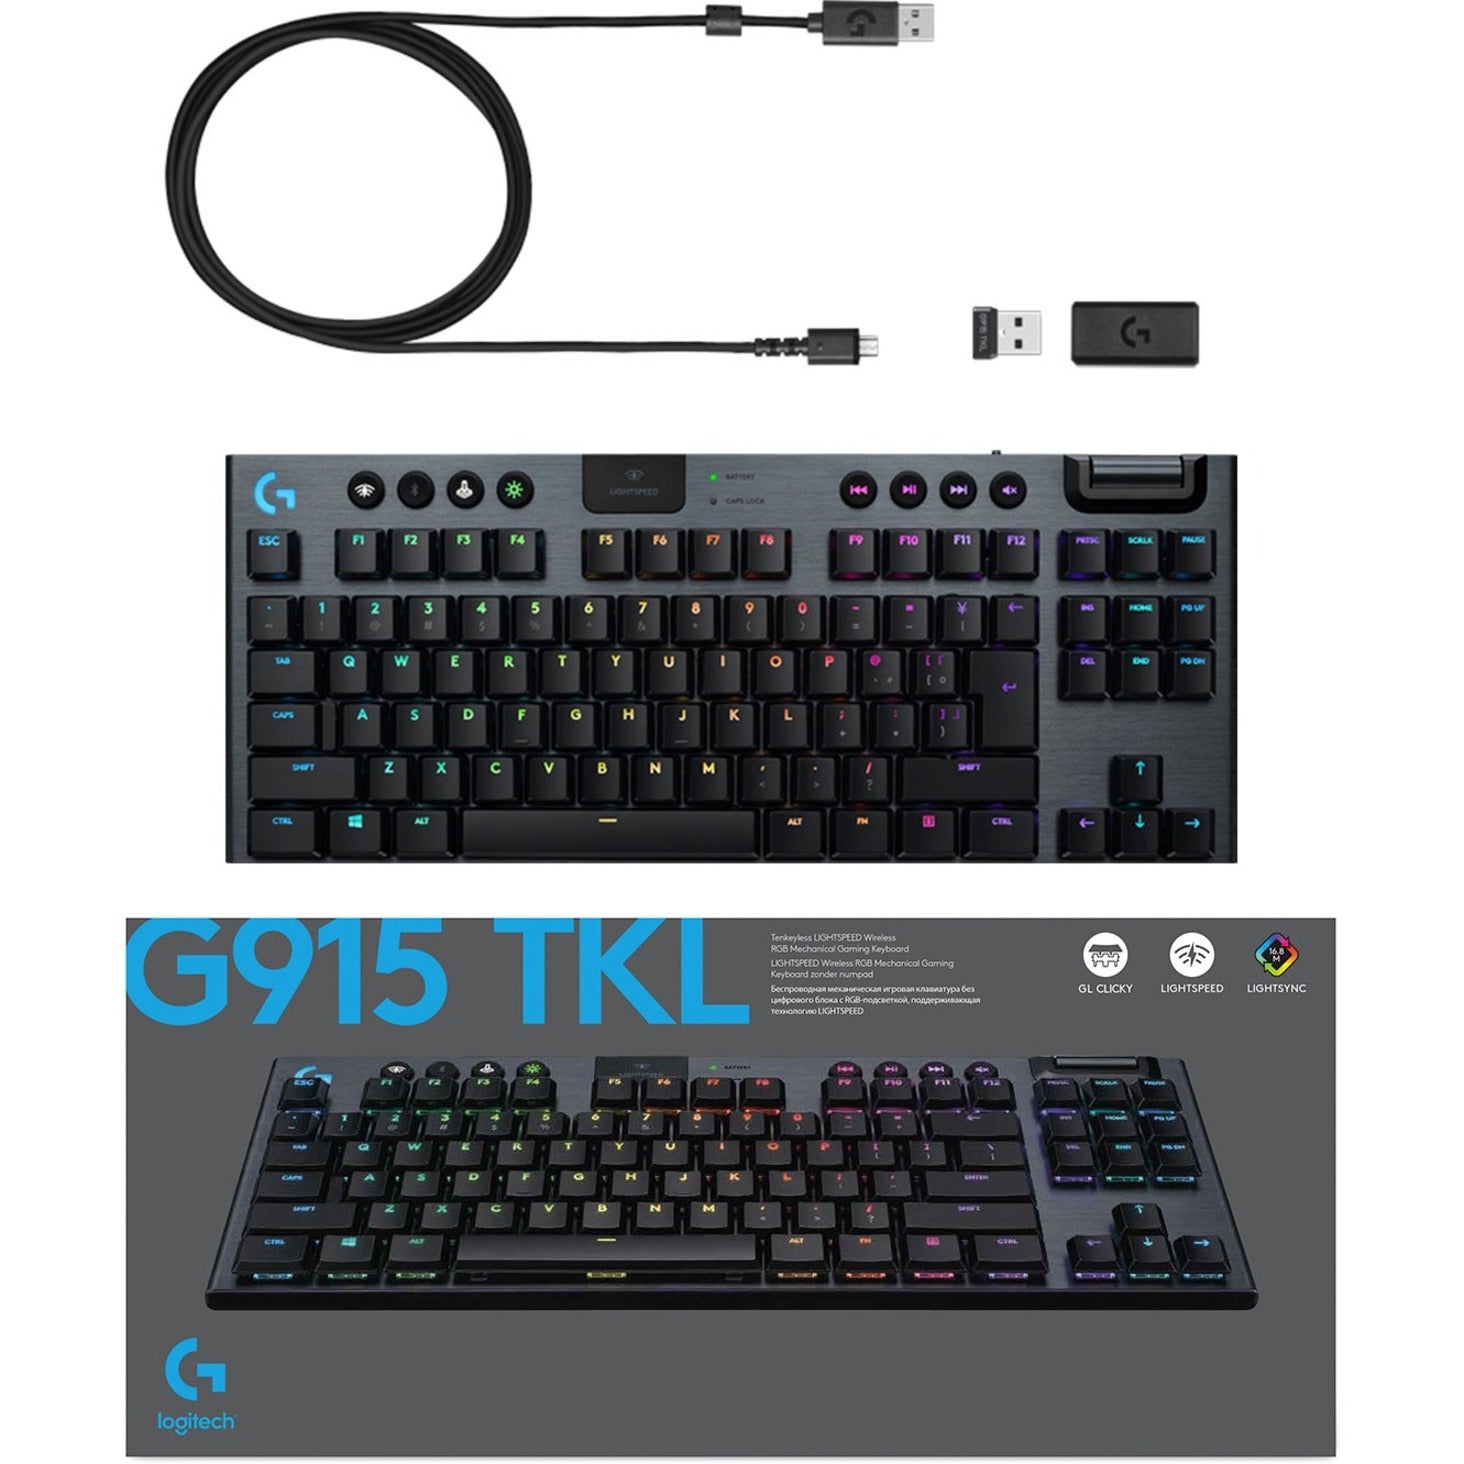 Logitech 920-009512 G915 TKL Tenkeyless Lightspeed Wireless RGB Mechanical Gaming Keyboard, Rechargeable, Low-profile Keys, Compact Keyboard